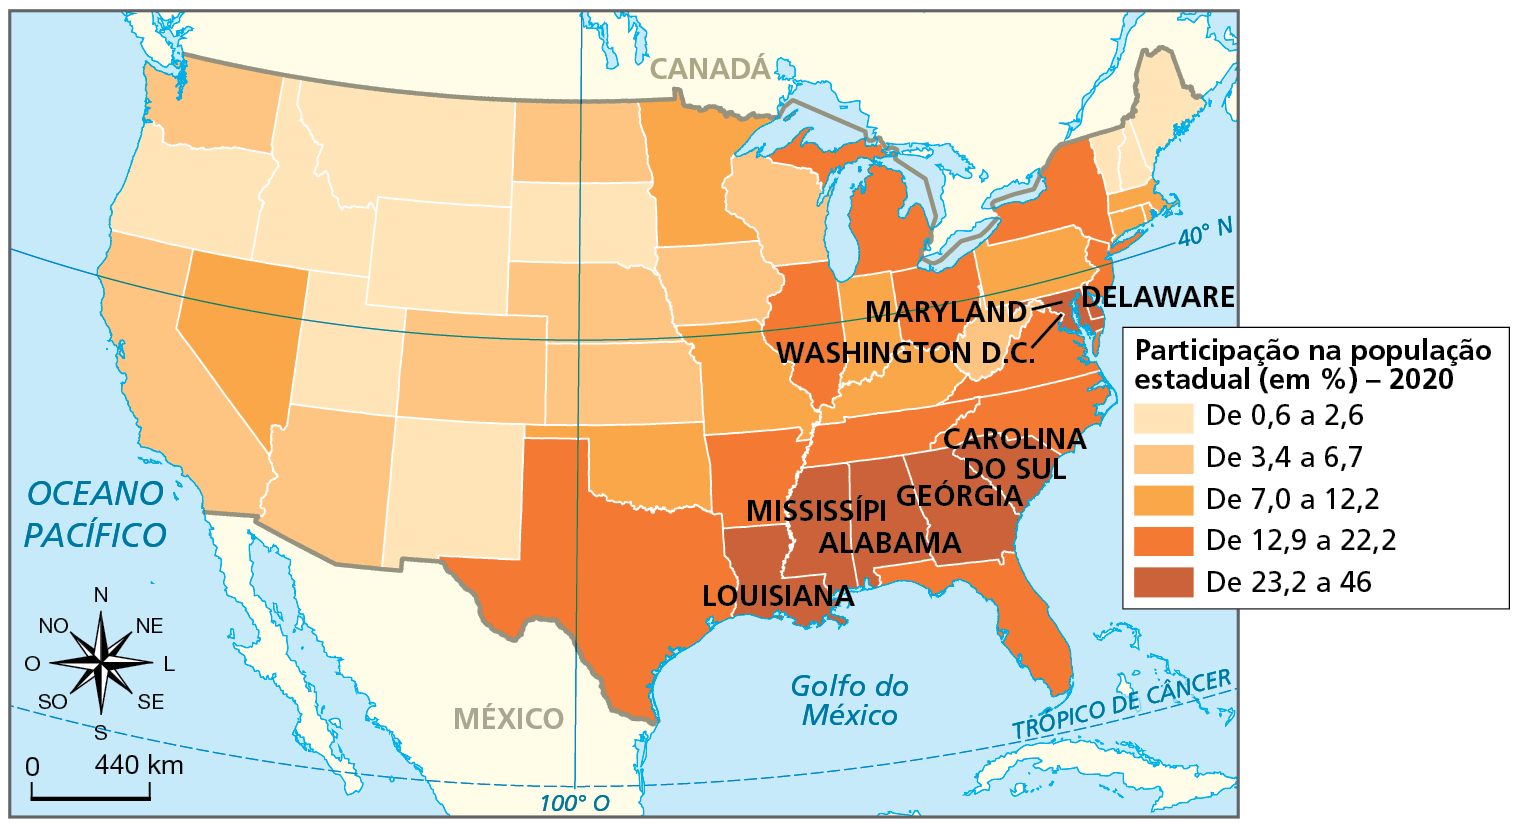 Mapa. Estados Unidos: distribuição da população negra, 2020. Mapa de parte da América do Norte com a divisão política dos Estados Unidos e a porcentagem de participação da população negra em cada estado.    Participação na população estadual, em porcentagem, 2020.  De 0,6 a 2,6 por cento: em estados na porção noroeste, centro-sul e extremo nordeste.   De 3,4  a 6,7 por cento: estados no centro e a sudoeste.  De 7,0 a 12,2 por cento: estados no centro, um estado a oeste e alguns  estados na porção leste.  De 12,9 a 22,2 por cento: predomínio nos estados a leste, nordeste, sudeste e sul.   De 23,2 a 46 por cento: no sudeste (Louisiana, Mississipi, Alabama, Geórgia e Carolina do Sul) e a leste (Whashington D.C., Maryland e Delaware). À esquerda, rosa dos ventos e escala de 0 a 440 quilômetros.